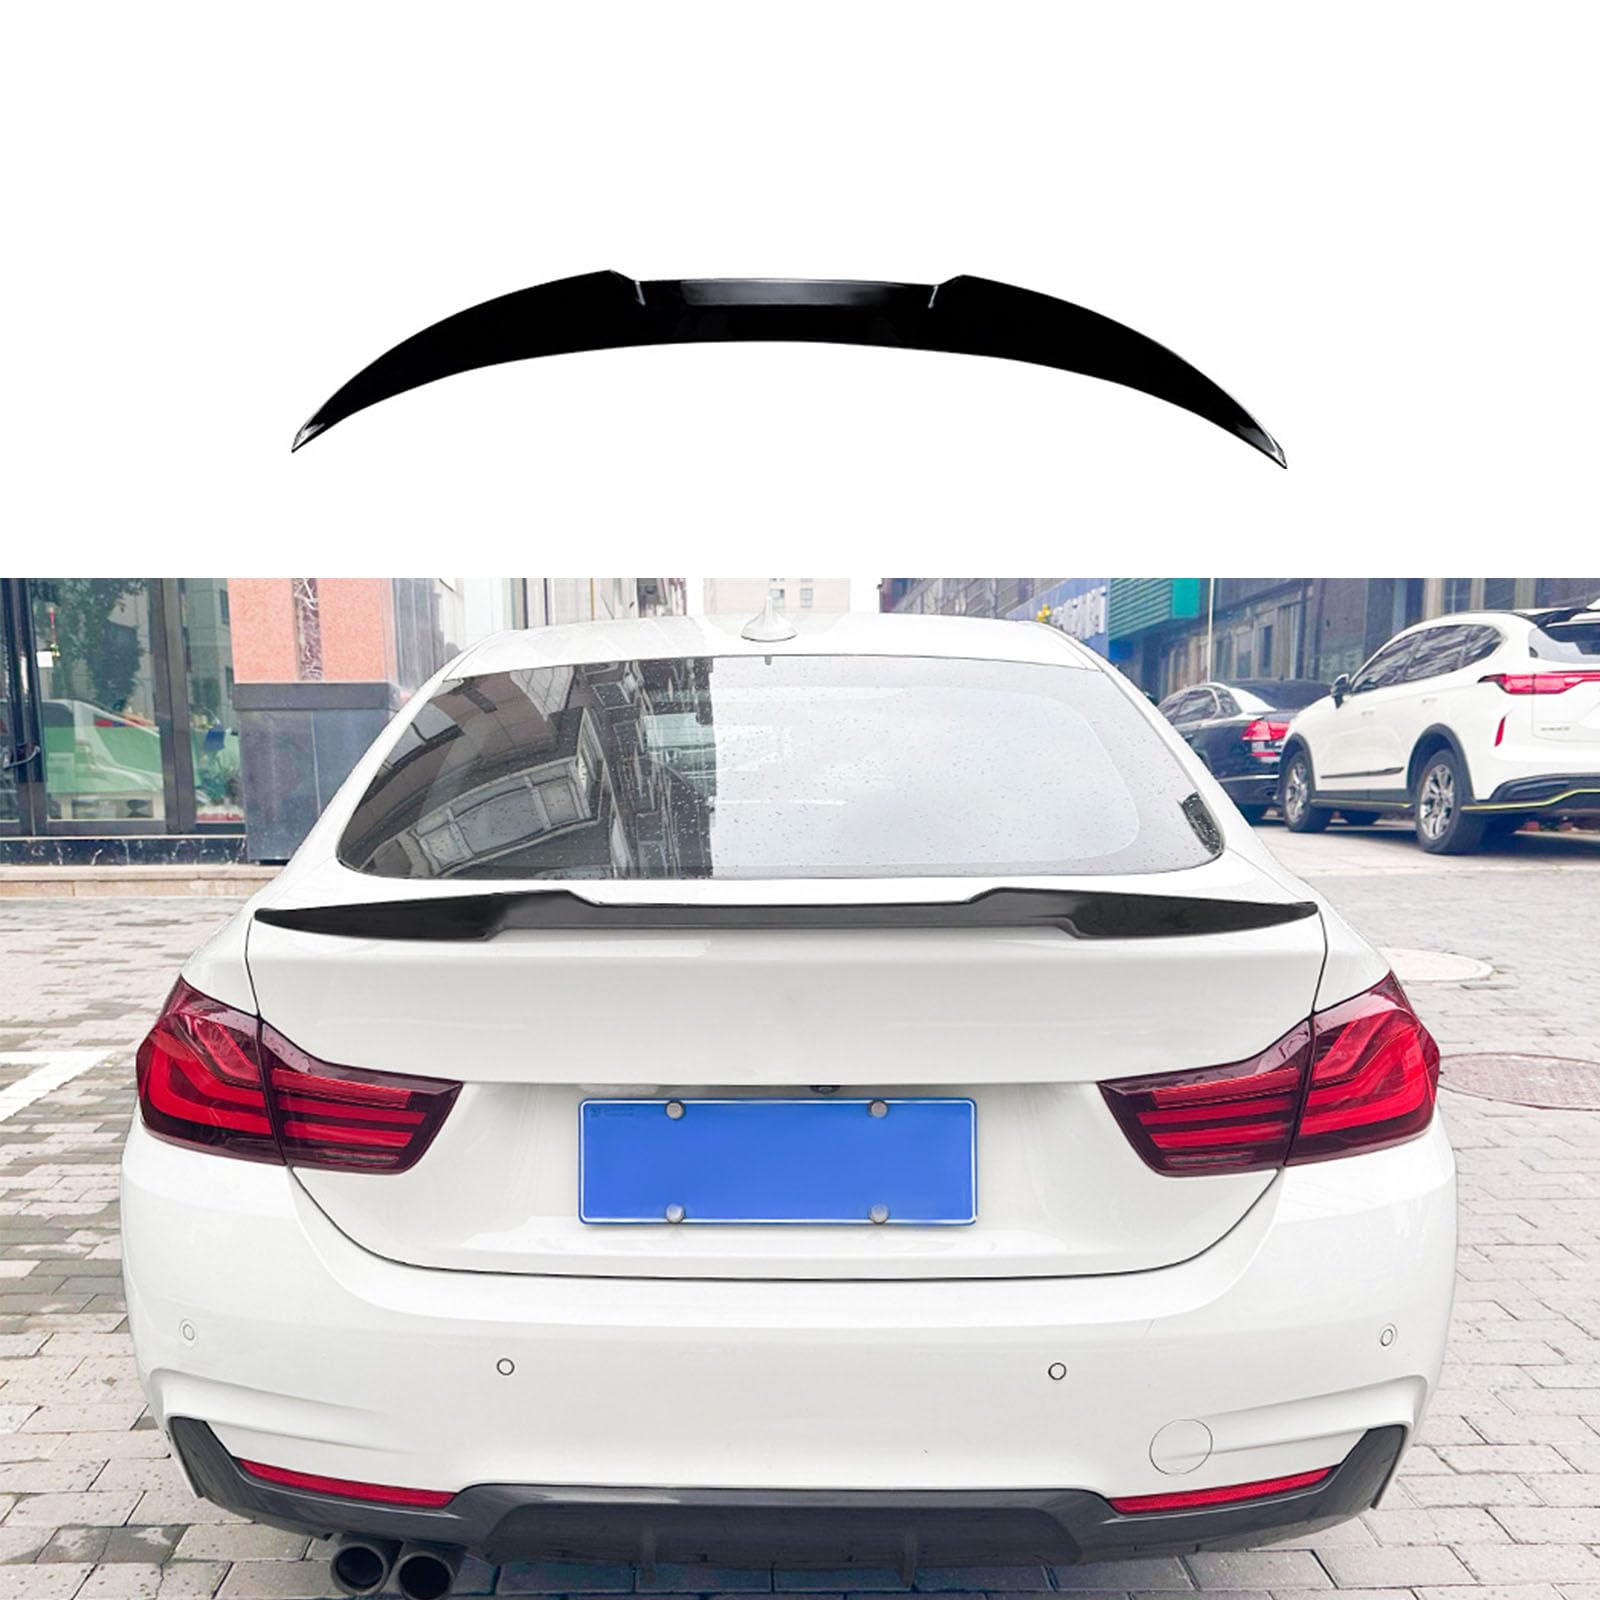 Kompatibel für BMW 4 Series F36 M4 Style 2014-2020, Auto Heckflügel Kofferraumspoiler Kofferraum Flügel Lippe Spoiler Bodykits Zubehör,A Gloss Black von YPGHBHD